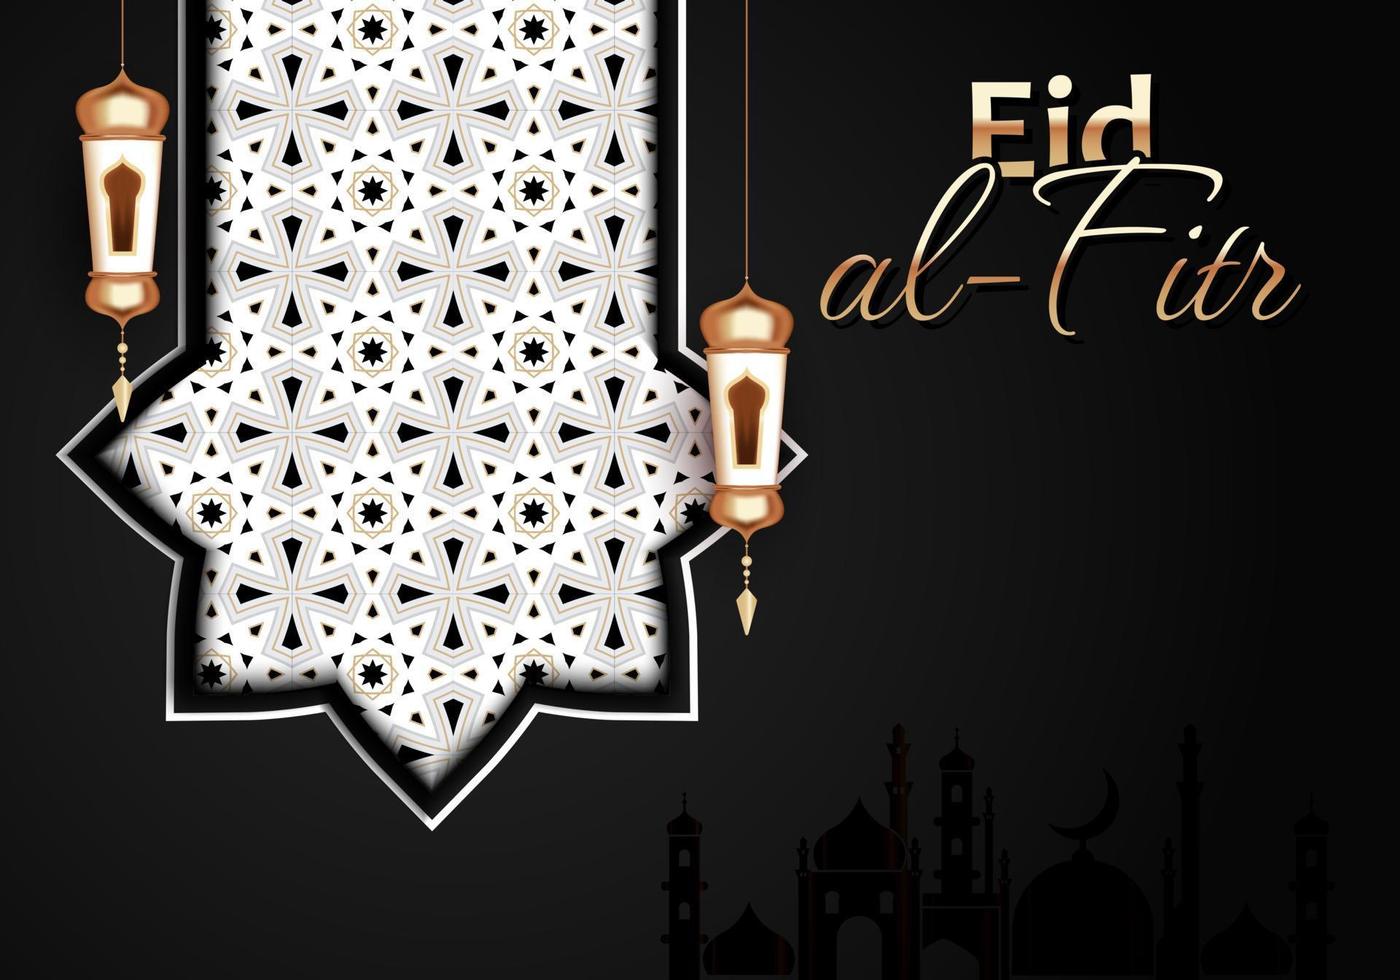 oggetti decorativi nell'Islam. ornamenti vettoriali per il mese di ramadan o eid al-fitr. illustrazione vettoriale.